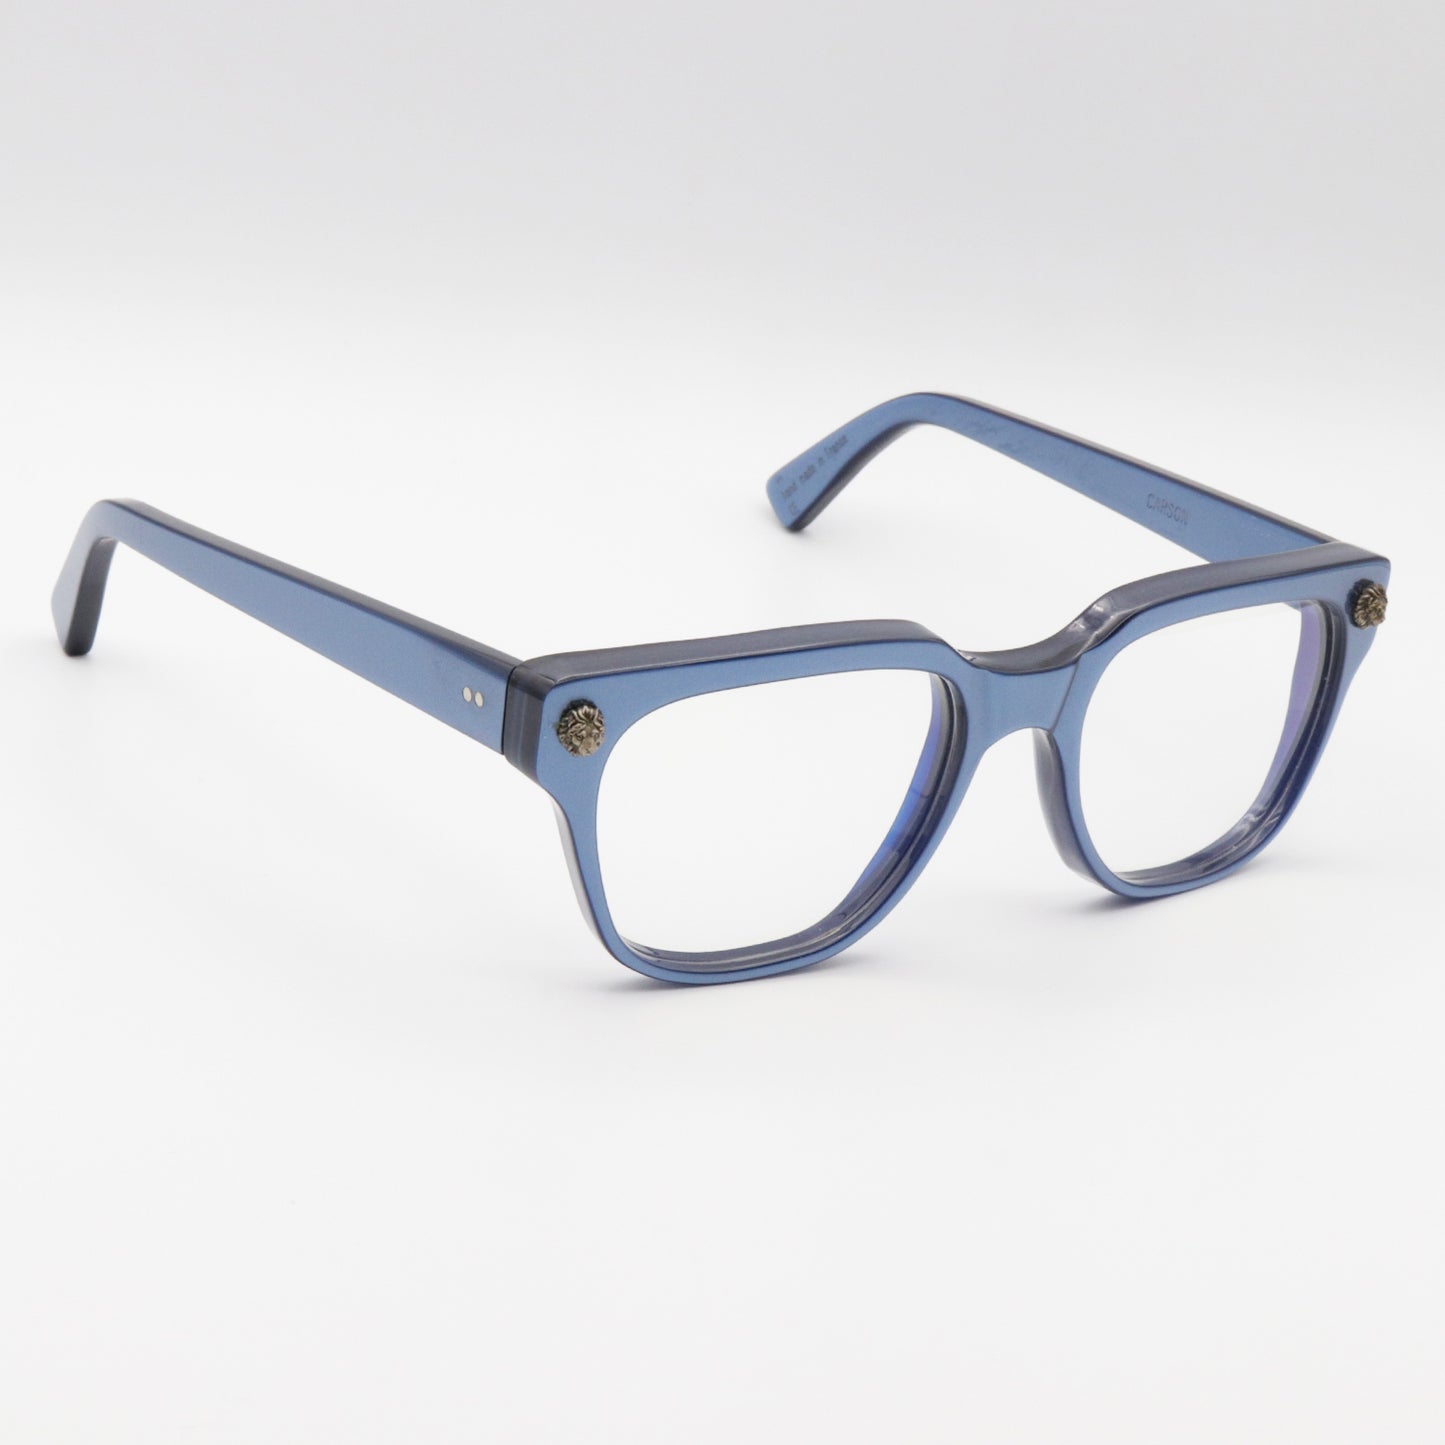 Carson V4 Kirk & Kirk Optical Glasses